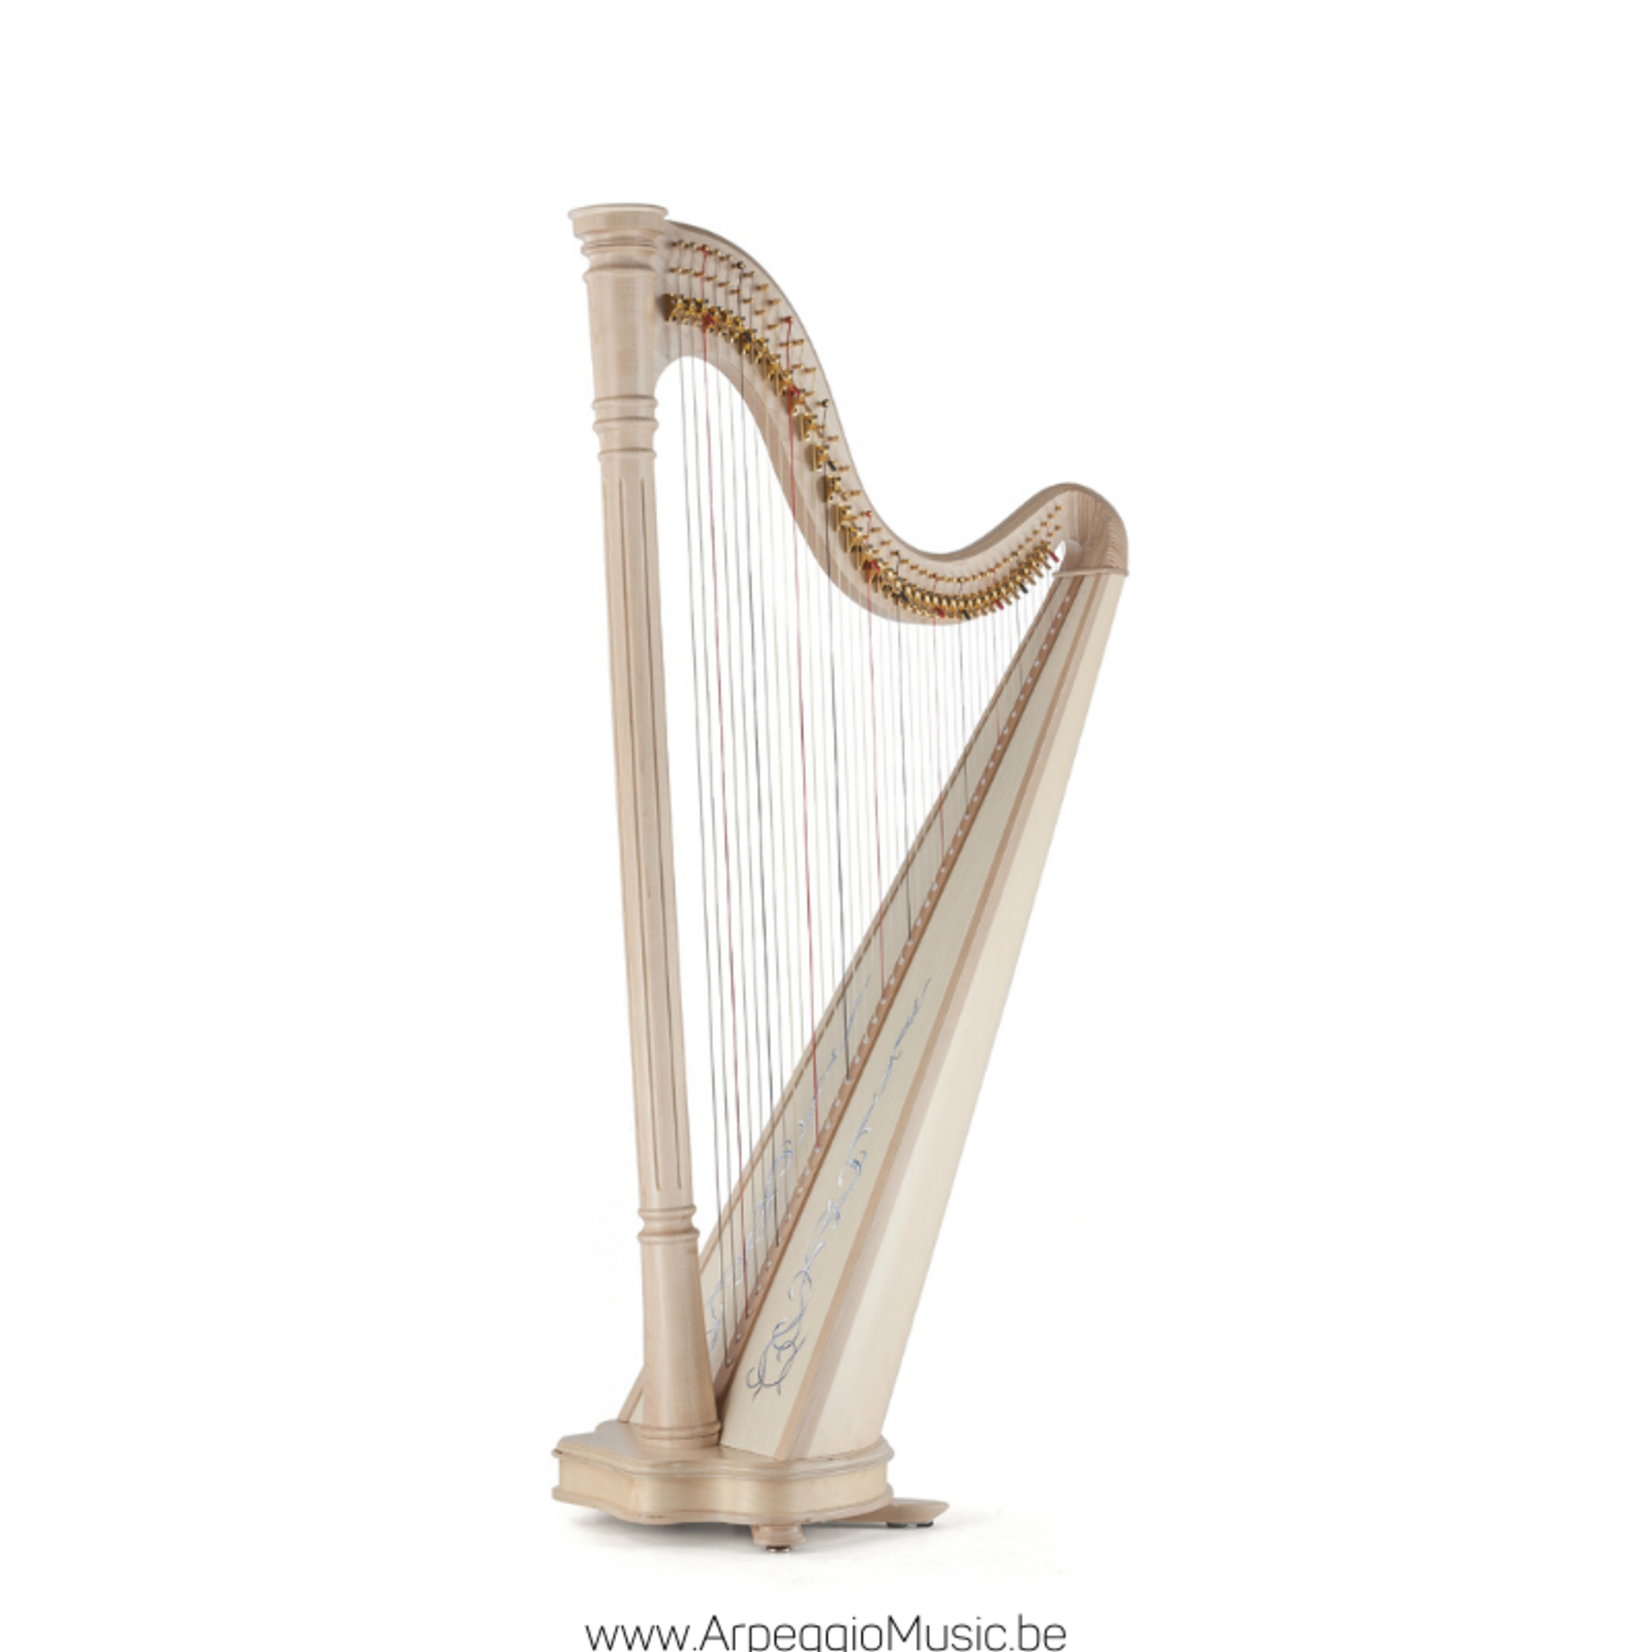 Salvi SALVI Ana harpe celtique